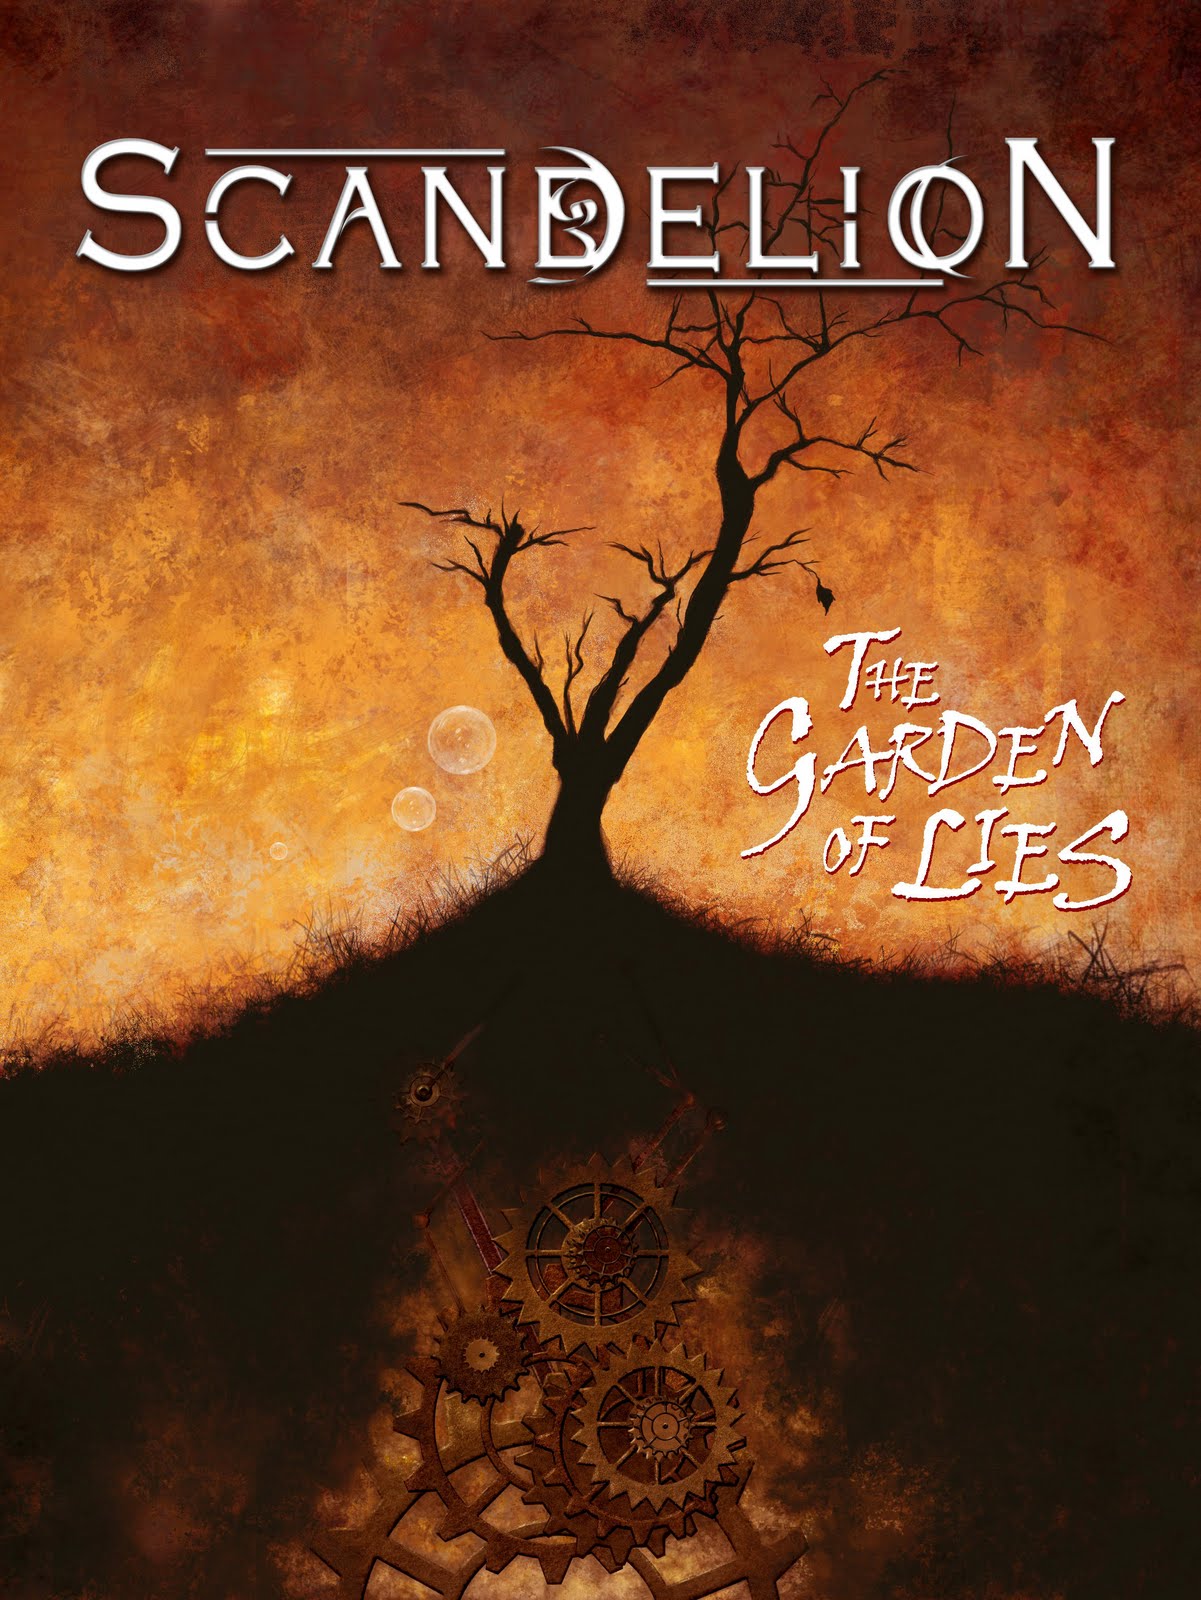 Scandelion - The Garden of Lies